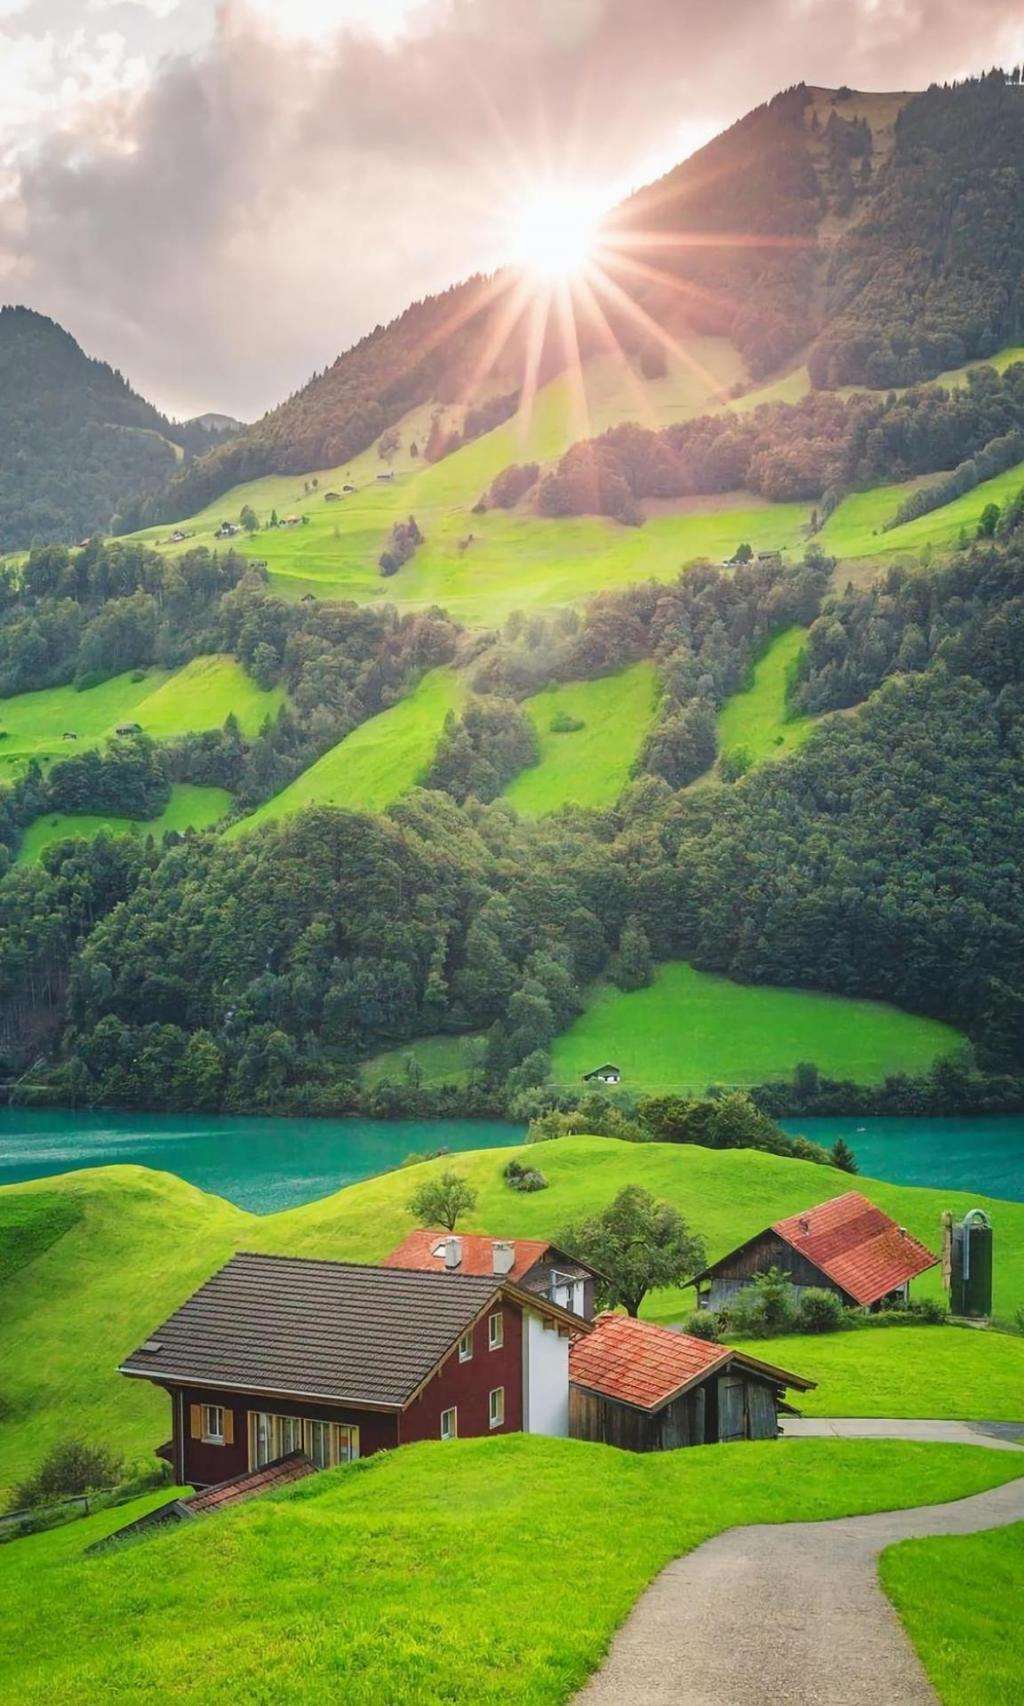 清新唯美的瑞士小镇,锁屏图片,高清手机壁纸,风景